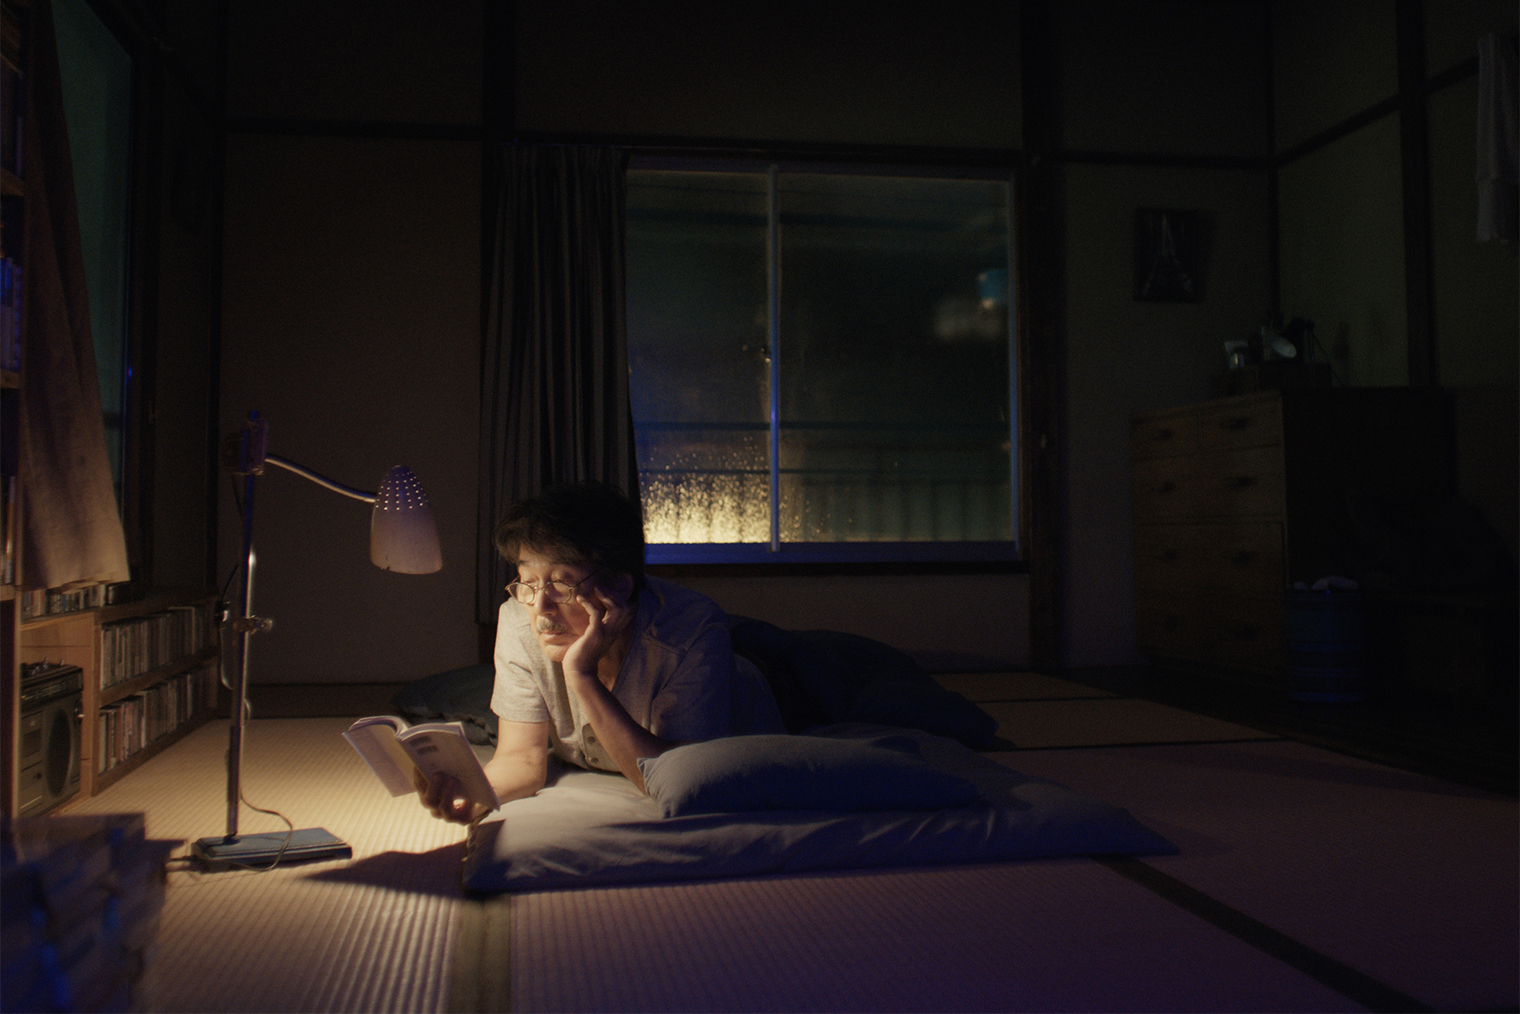 Еще один ритуал героя — чтение перед сном. Причем среди книг мелькают как романы Фолкнера, так и японская литература